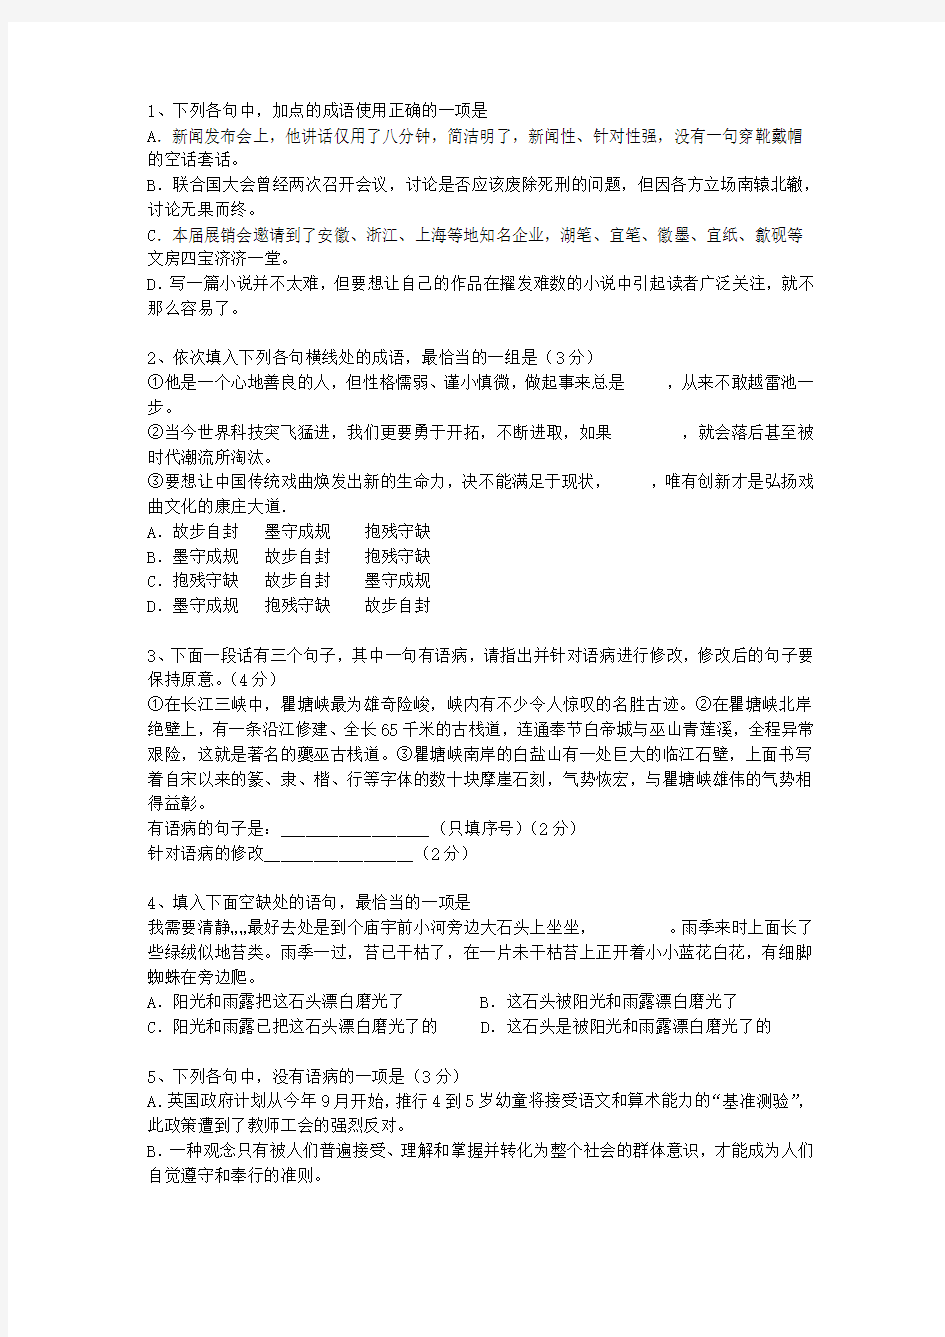 2012江苏省高考语文试卷答案、考点详解以及2016预测考试题库